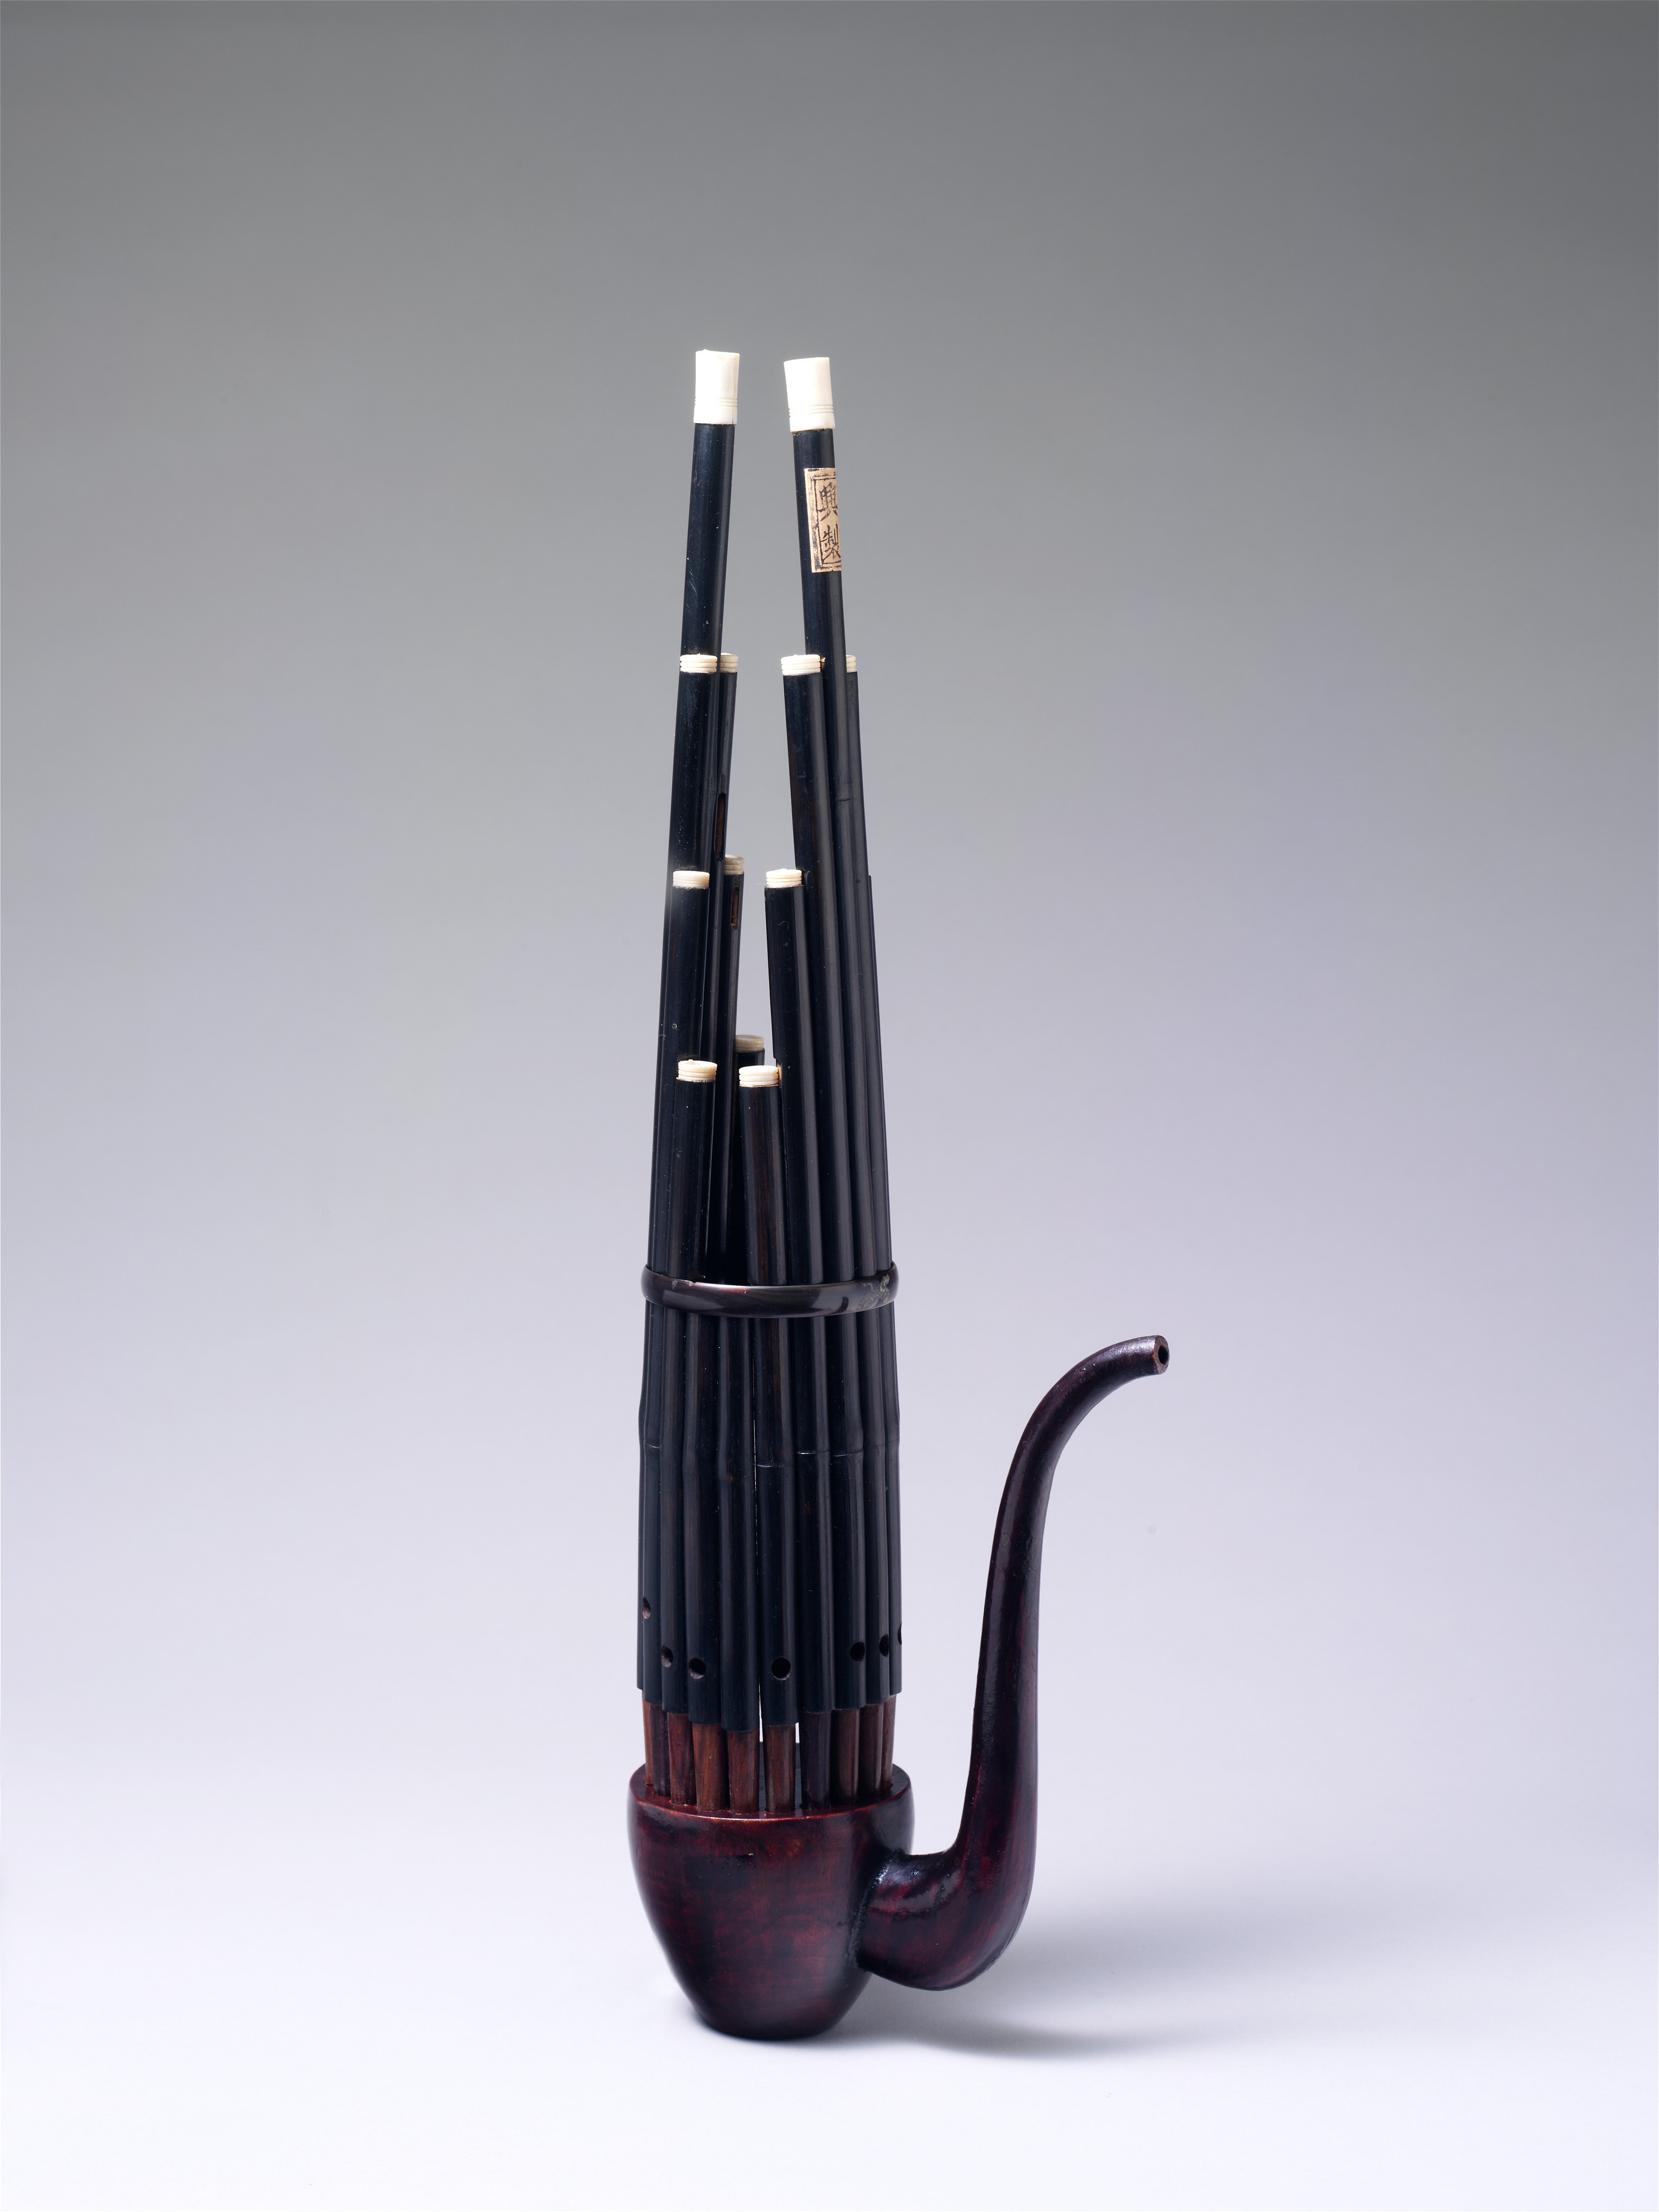 Хороший китайский инструмент. Шэн – язычковый духовой музыкальный инструмент\. Шэн инструмент. Китайский инструмент Шэн. Шэн китайский музыкальный инструмент.